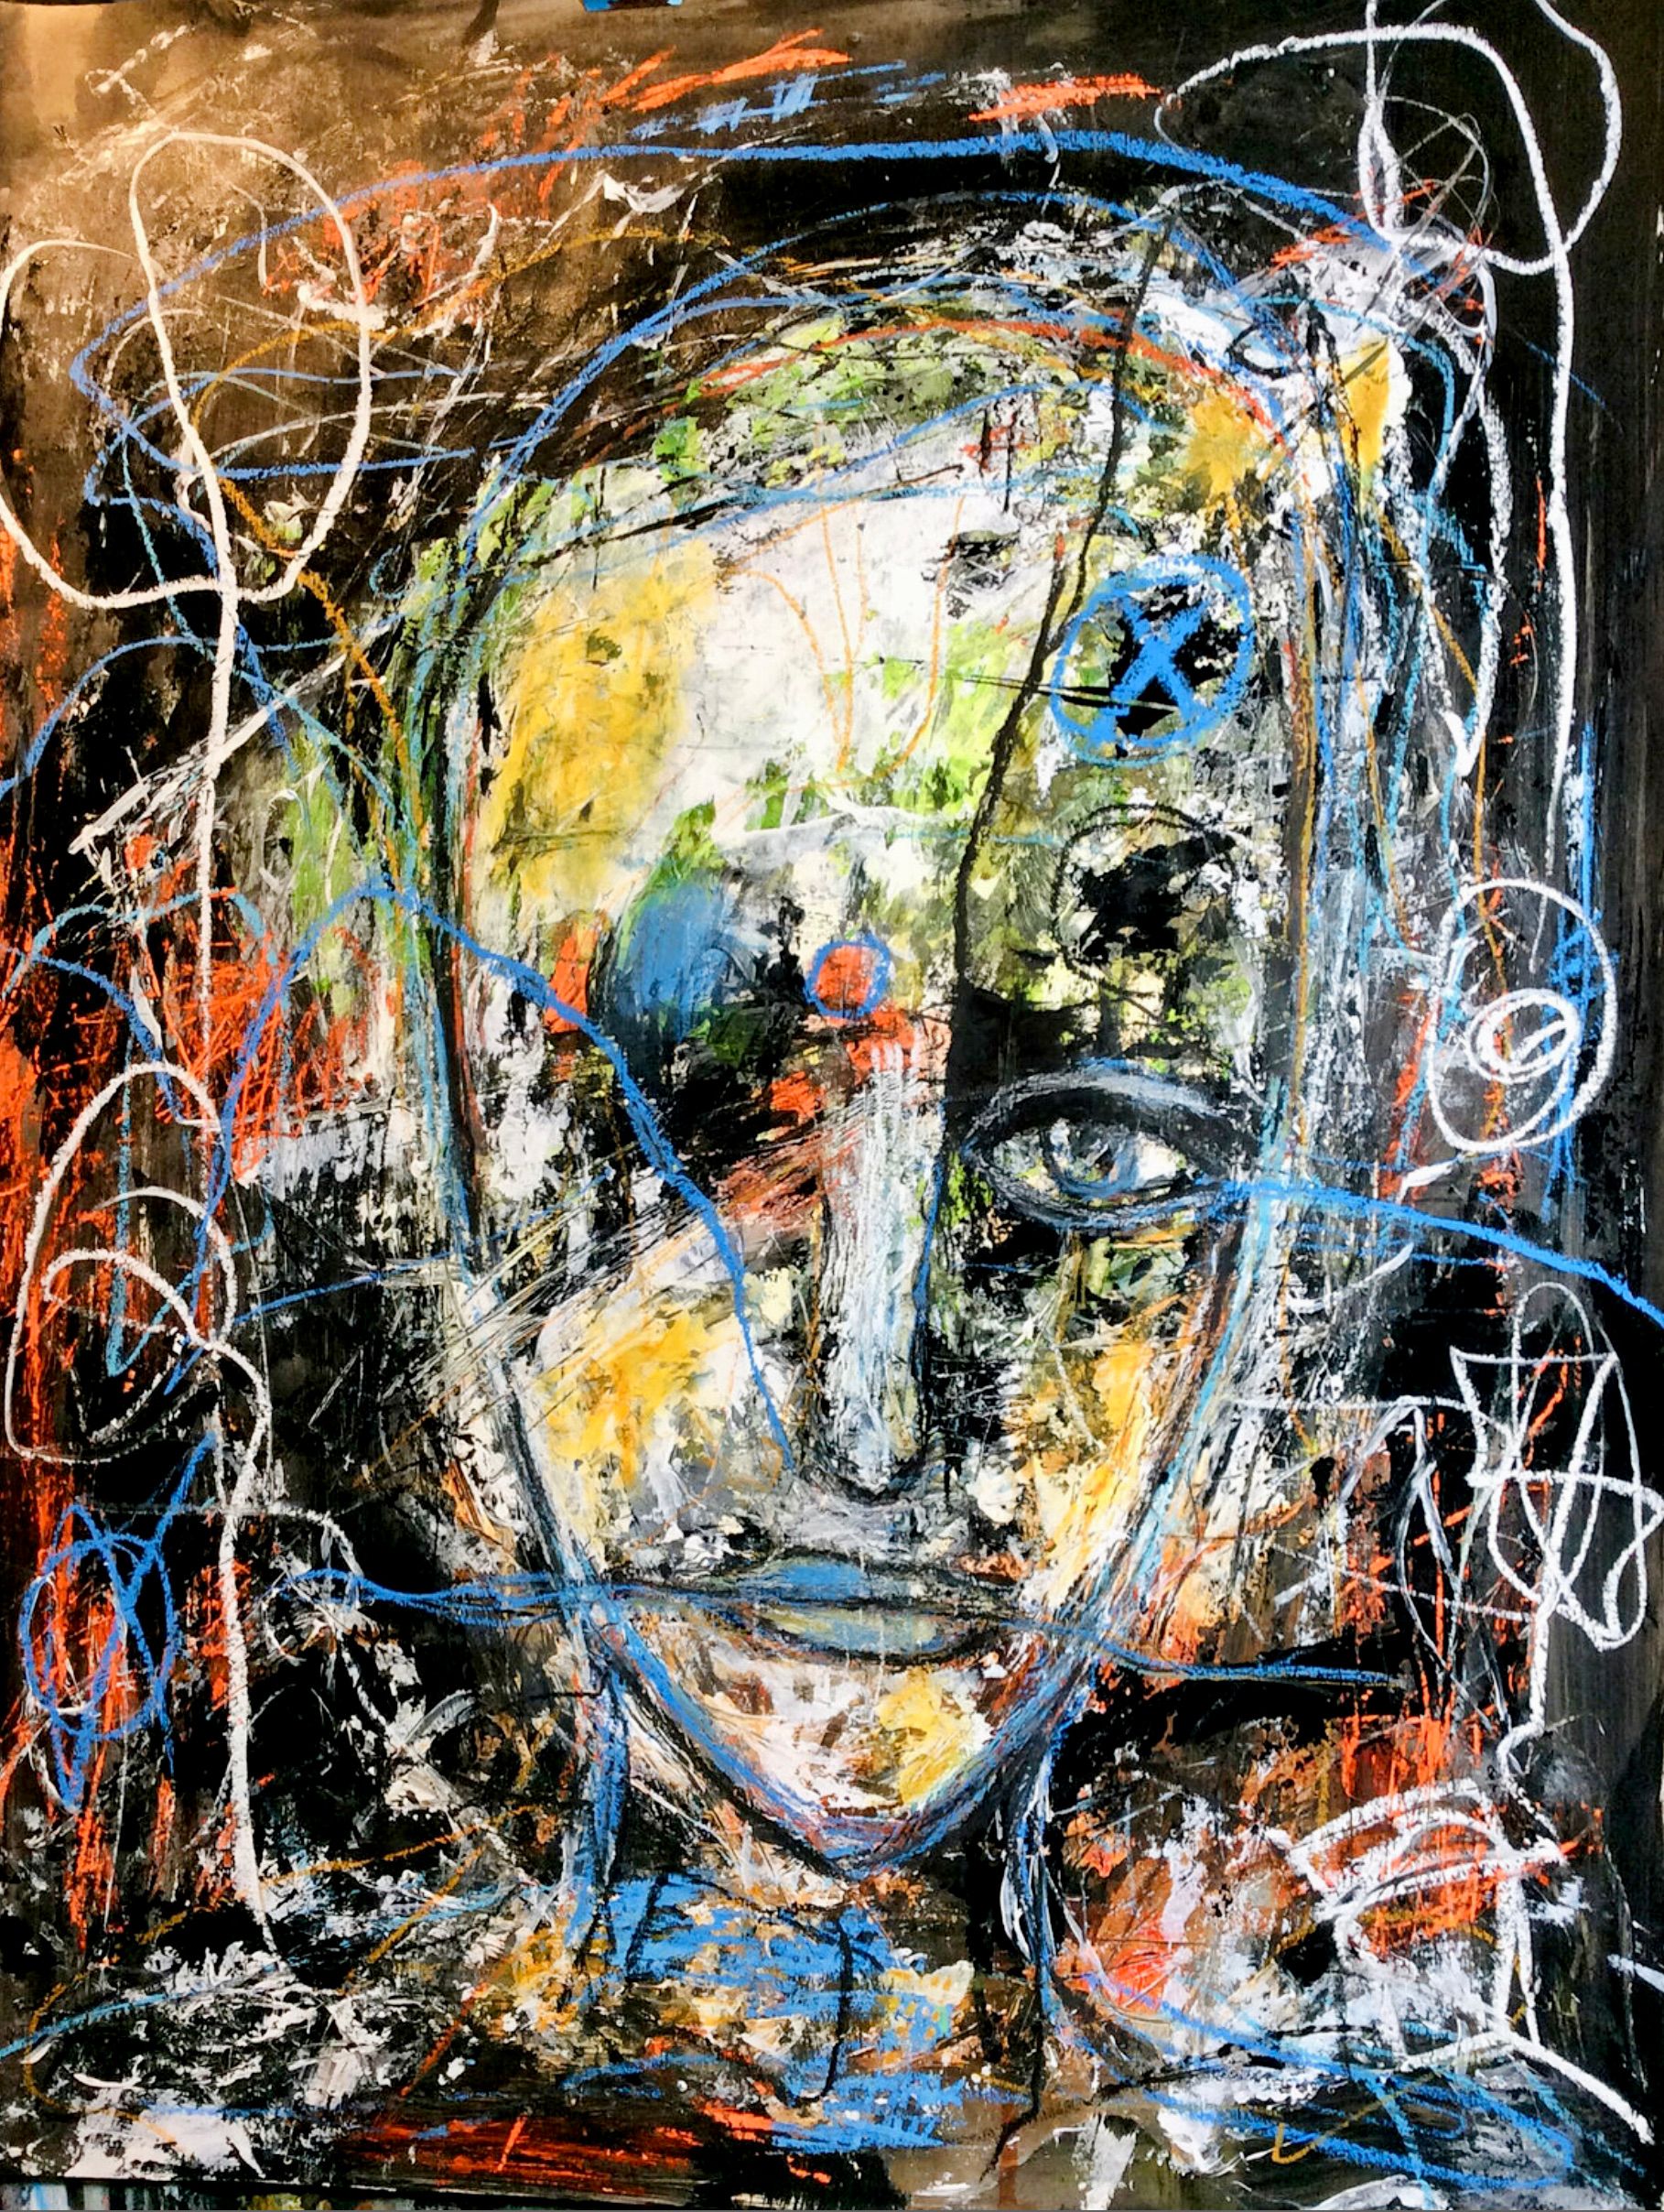 Ilona Schmidt的 "Spuren 1 "半抽象的表现性肖像画展示了一个女人的脸。黑色、橙色、红色和蓝色是这幅画的主要颜色。